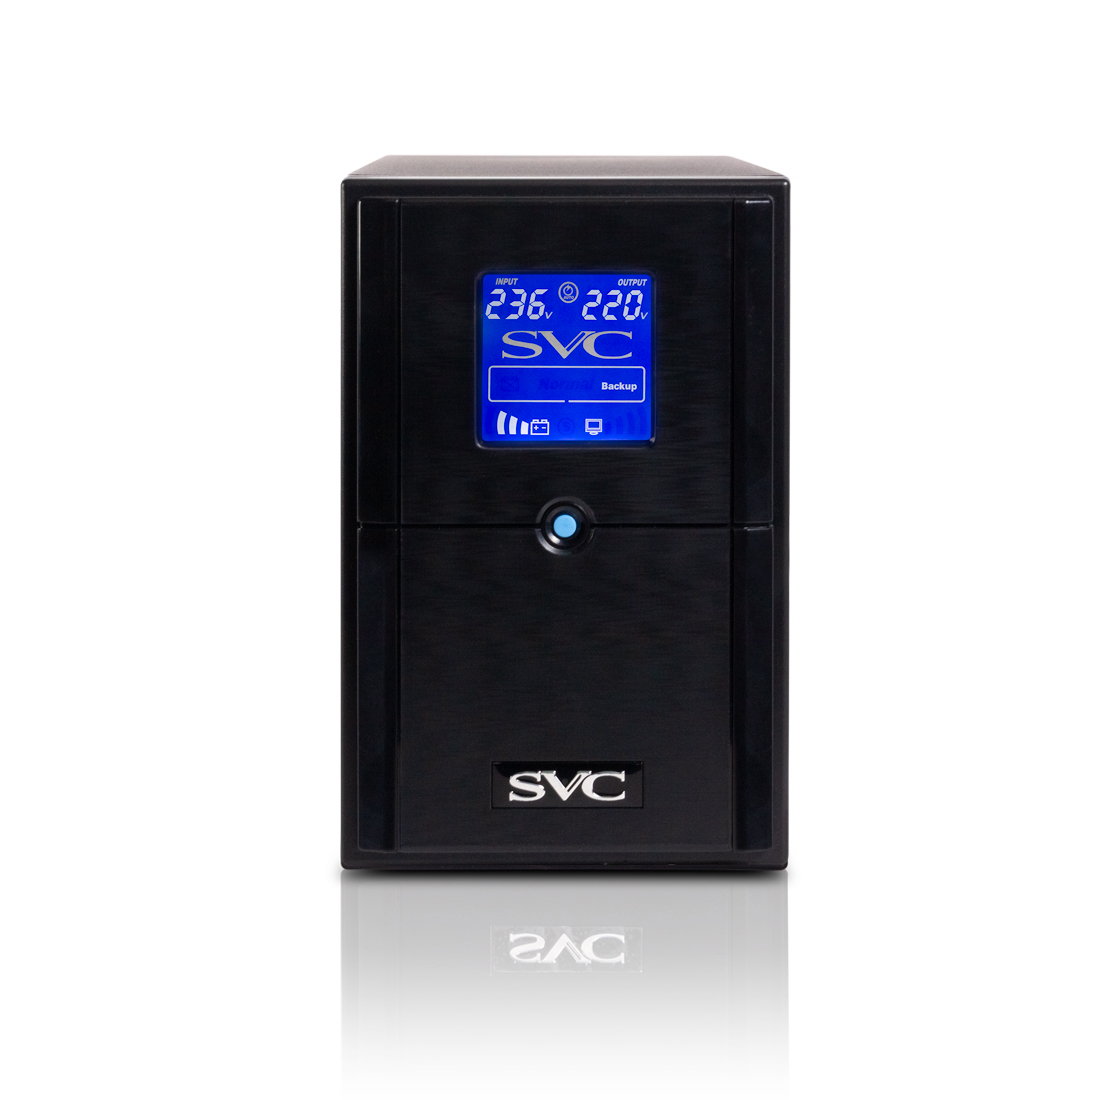 ИБП SVC V-1500-L-LCD